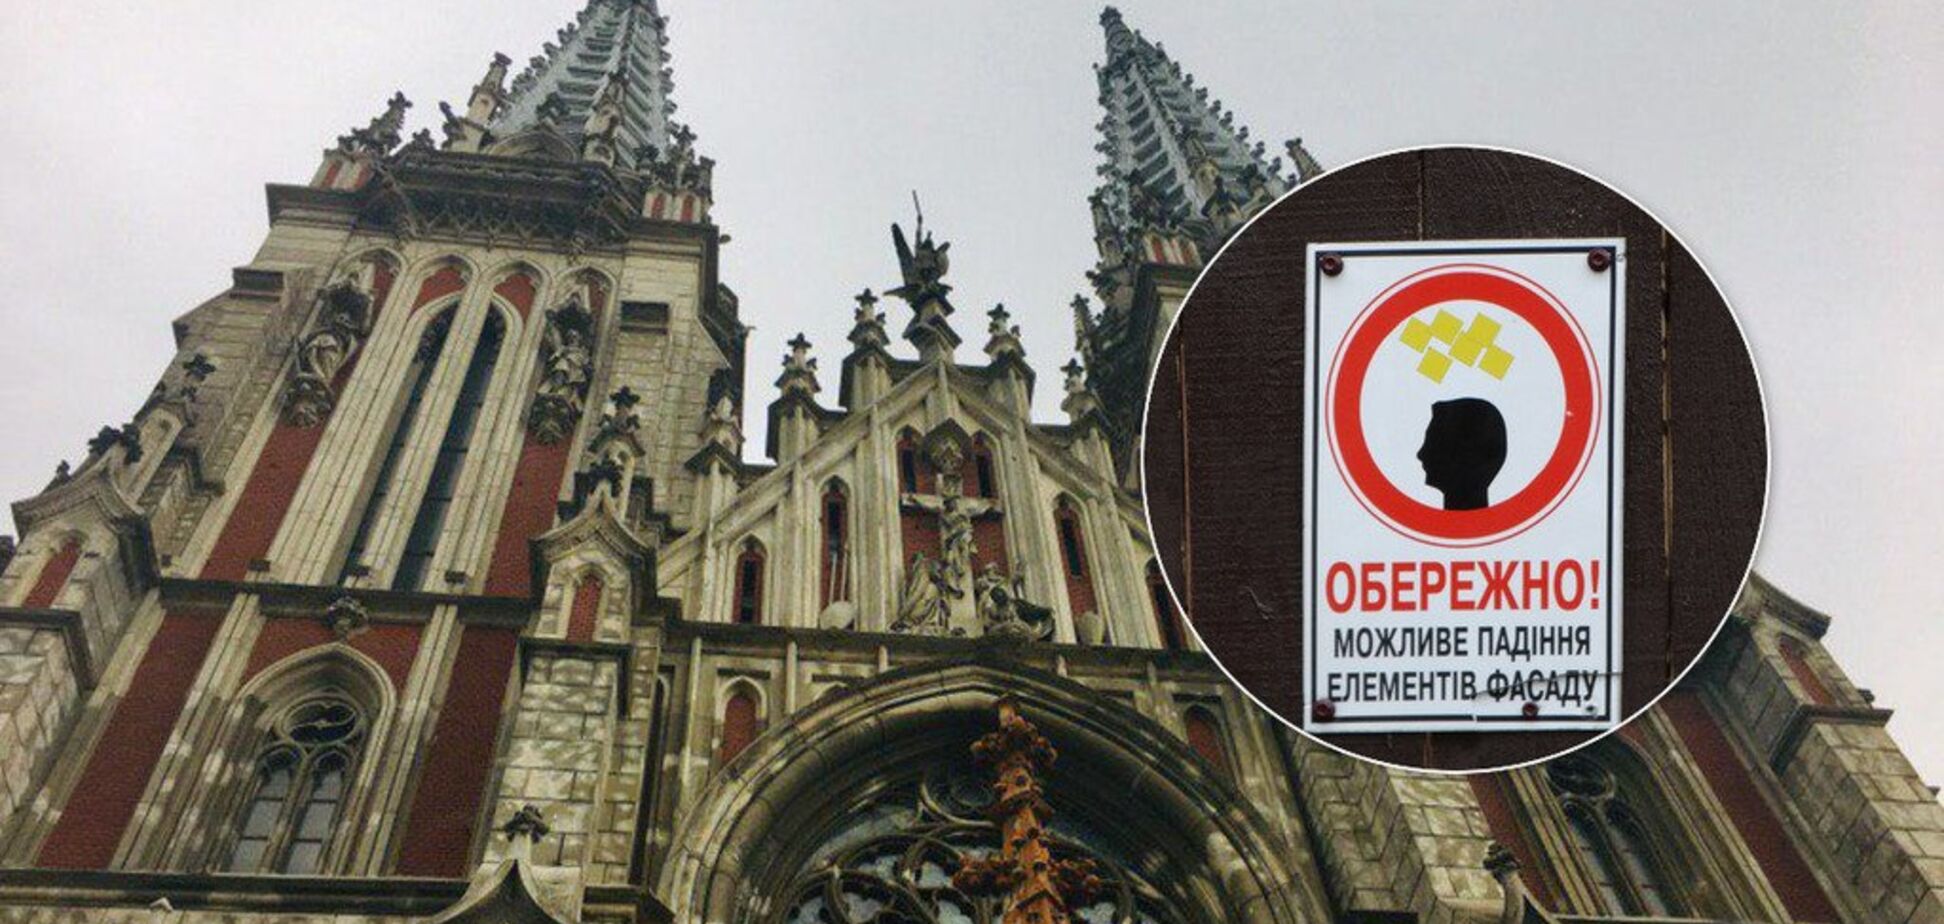 Під наглядом чиновників: унікальний собор Городецького довели до критичного стану